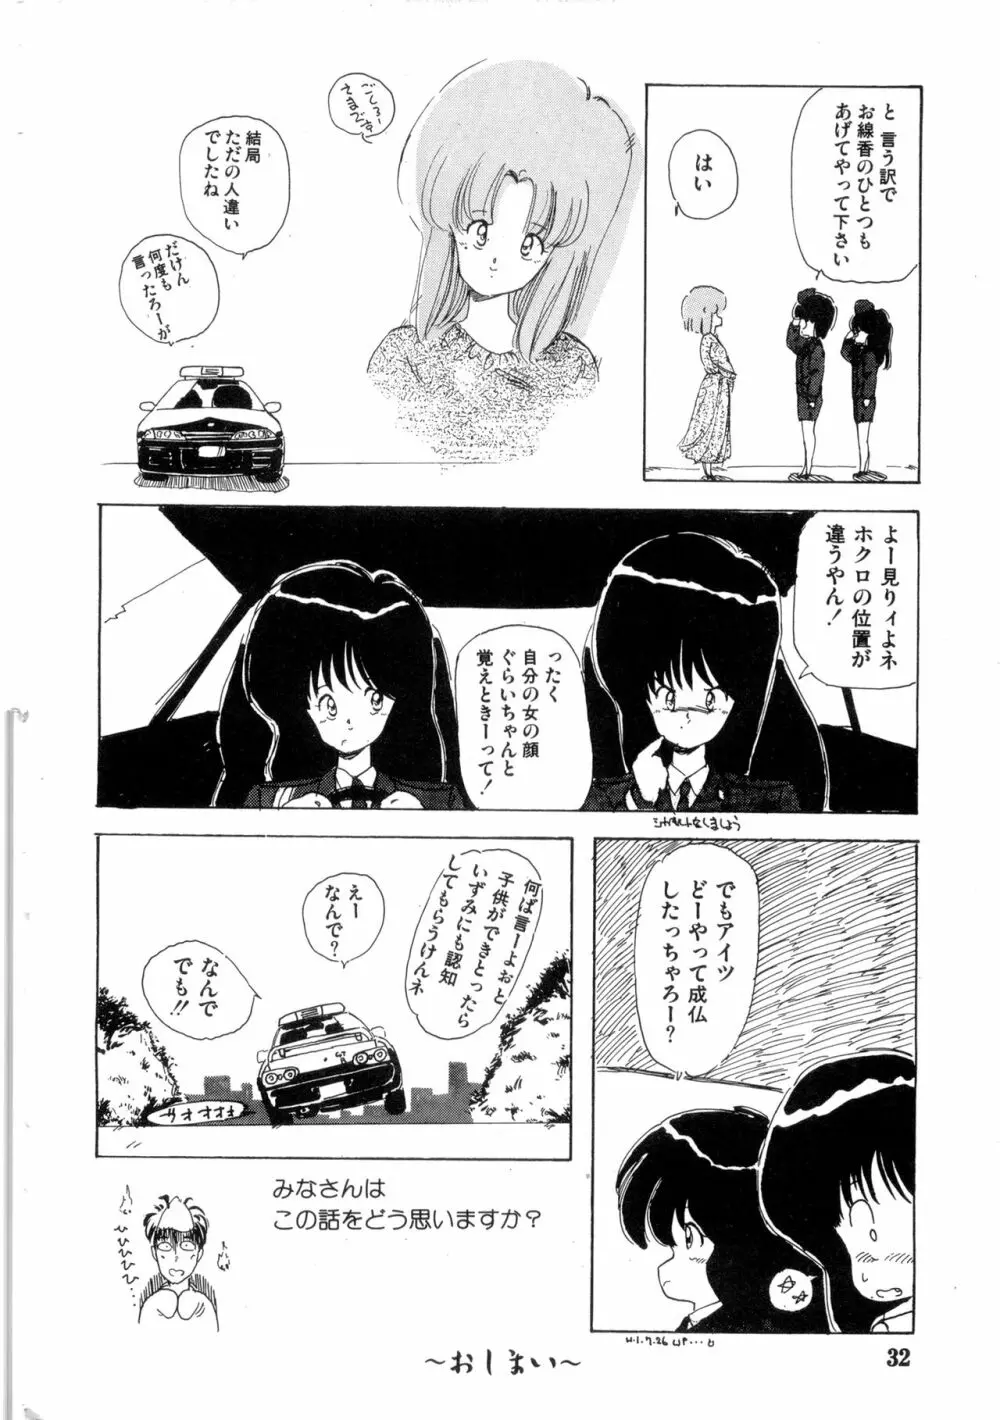 WAKE UP!! がんばれ婦警さんコミック VOL.2 32ページ